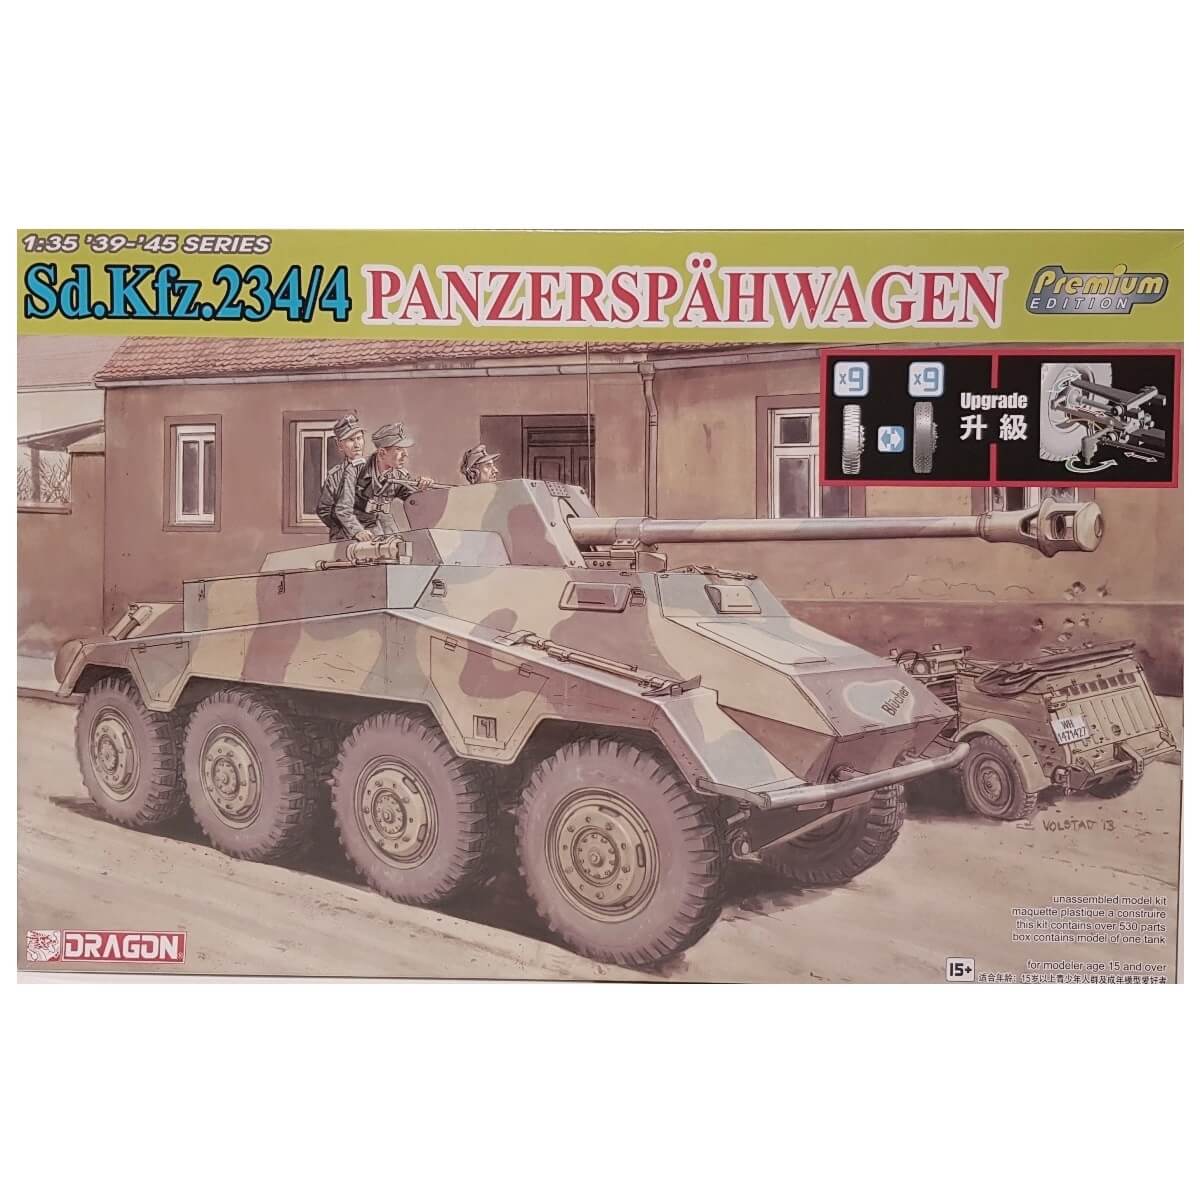 1:35 Sd.Kfz. 234/4 Panzerspahwagen - DRAGON